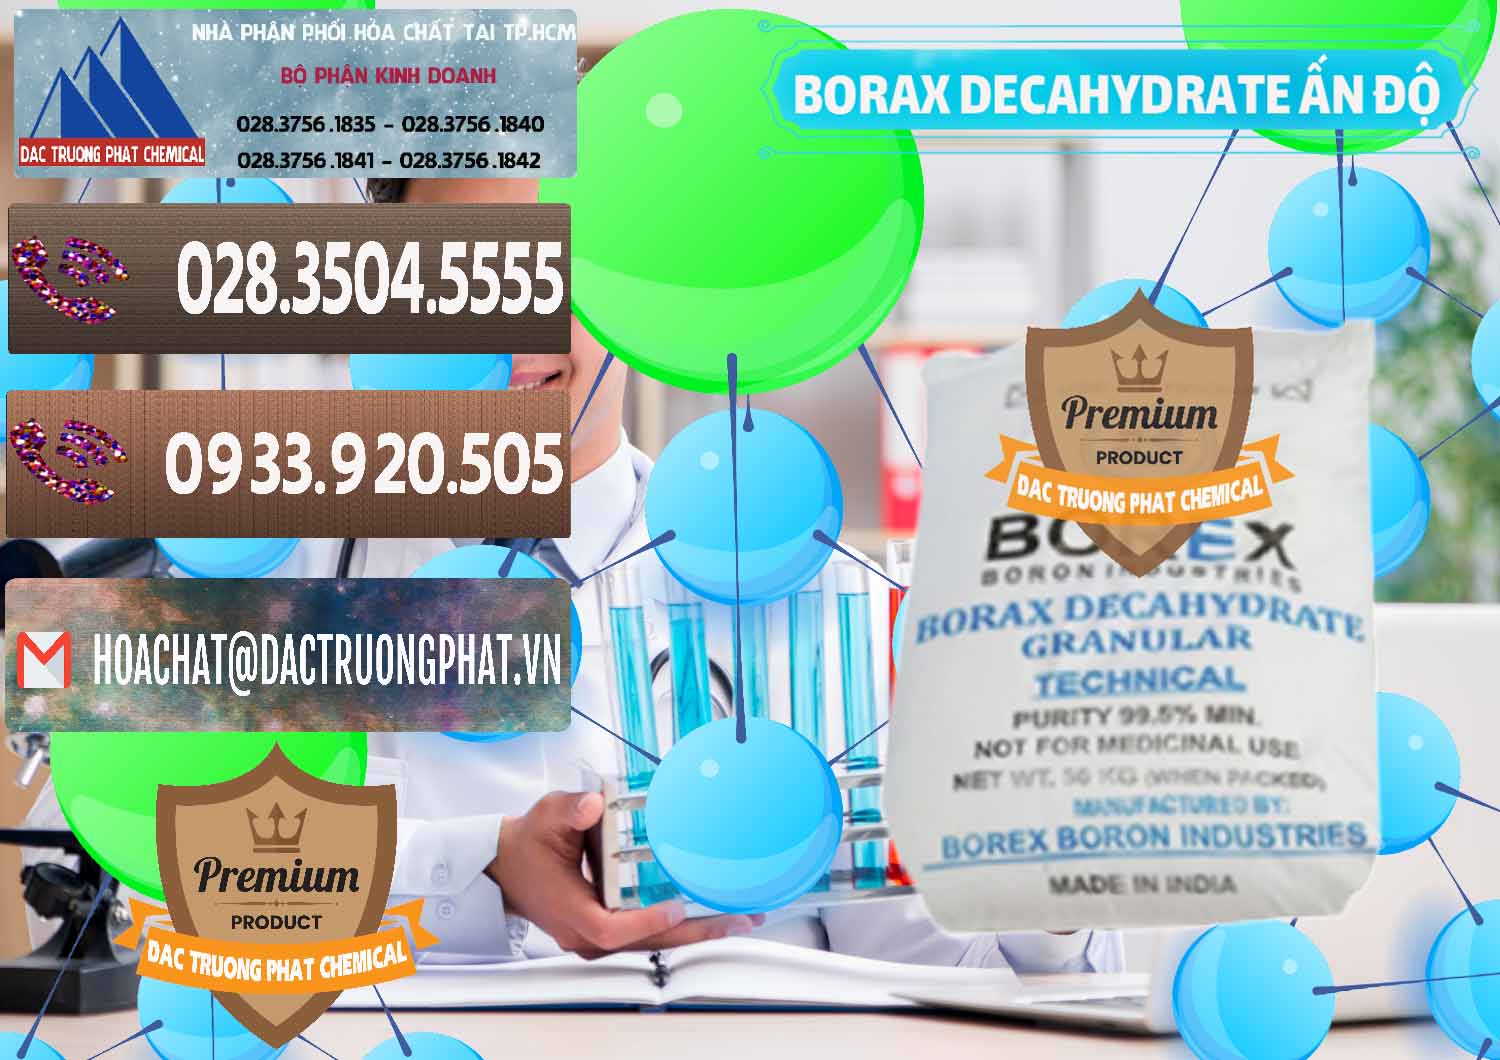 Cty chuyên phân phối - bán Borax Decahydrate Ấn Độ India - 0449 - Công ty cung ứng & phân phối hóa chất tại TP.HCM - hoachatviet.net